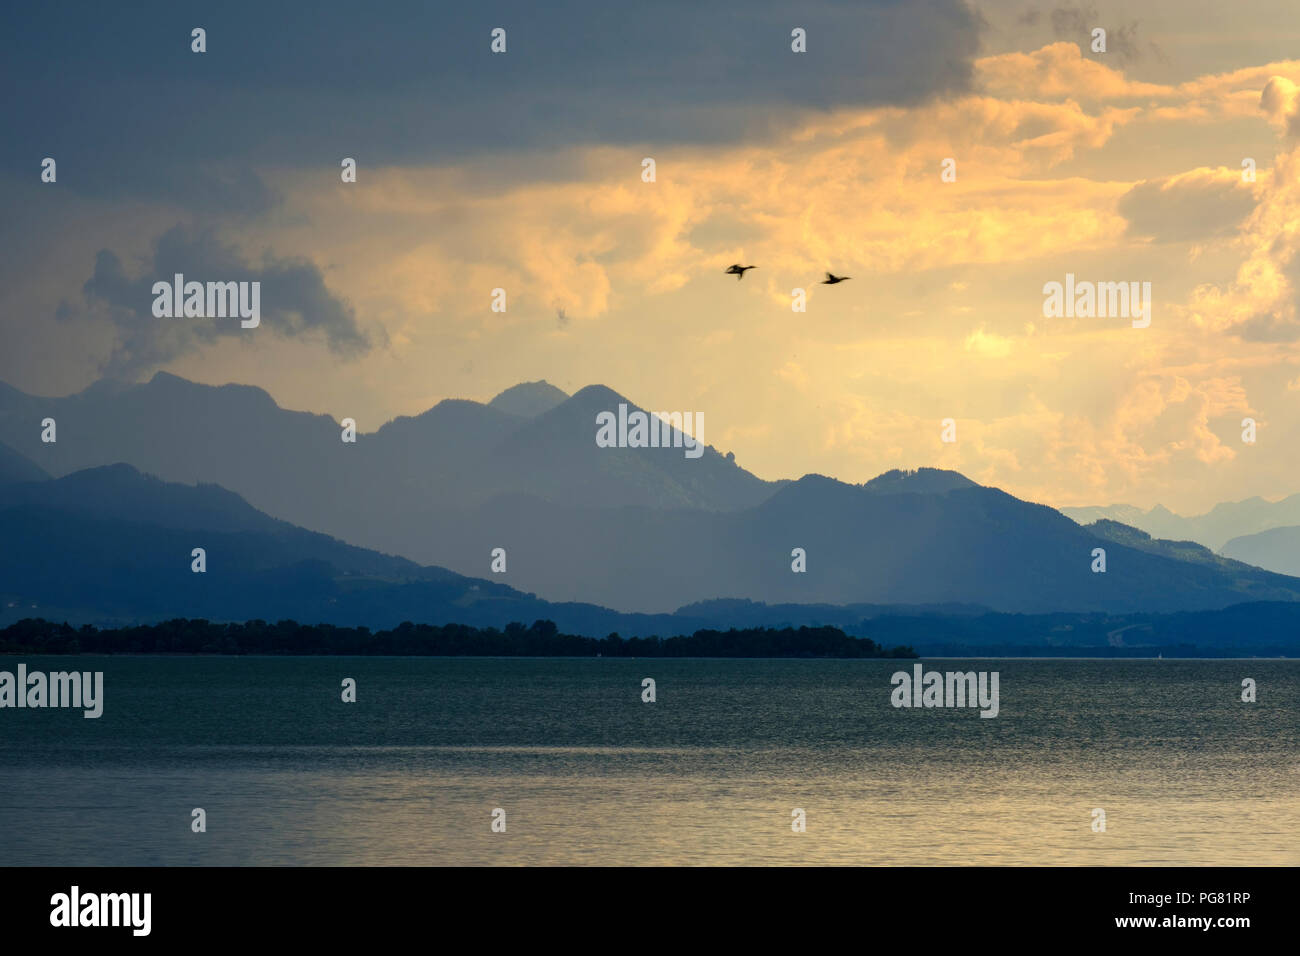 Alemania, Baviera, Alpes Chiemgau Chieming en Chiemsee, nubes oscuras sobre el lago Chiemsee Foto de stock